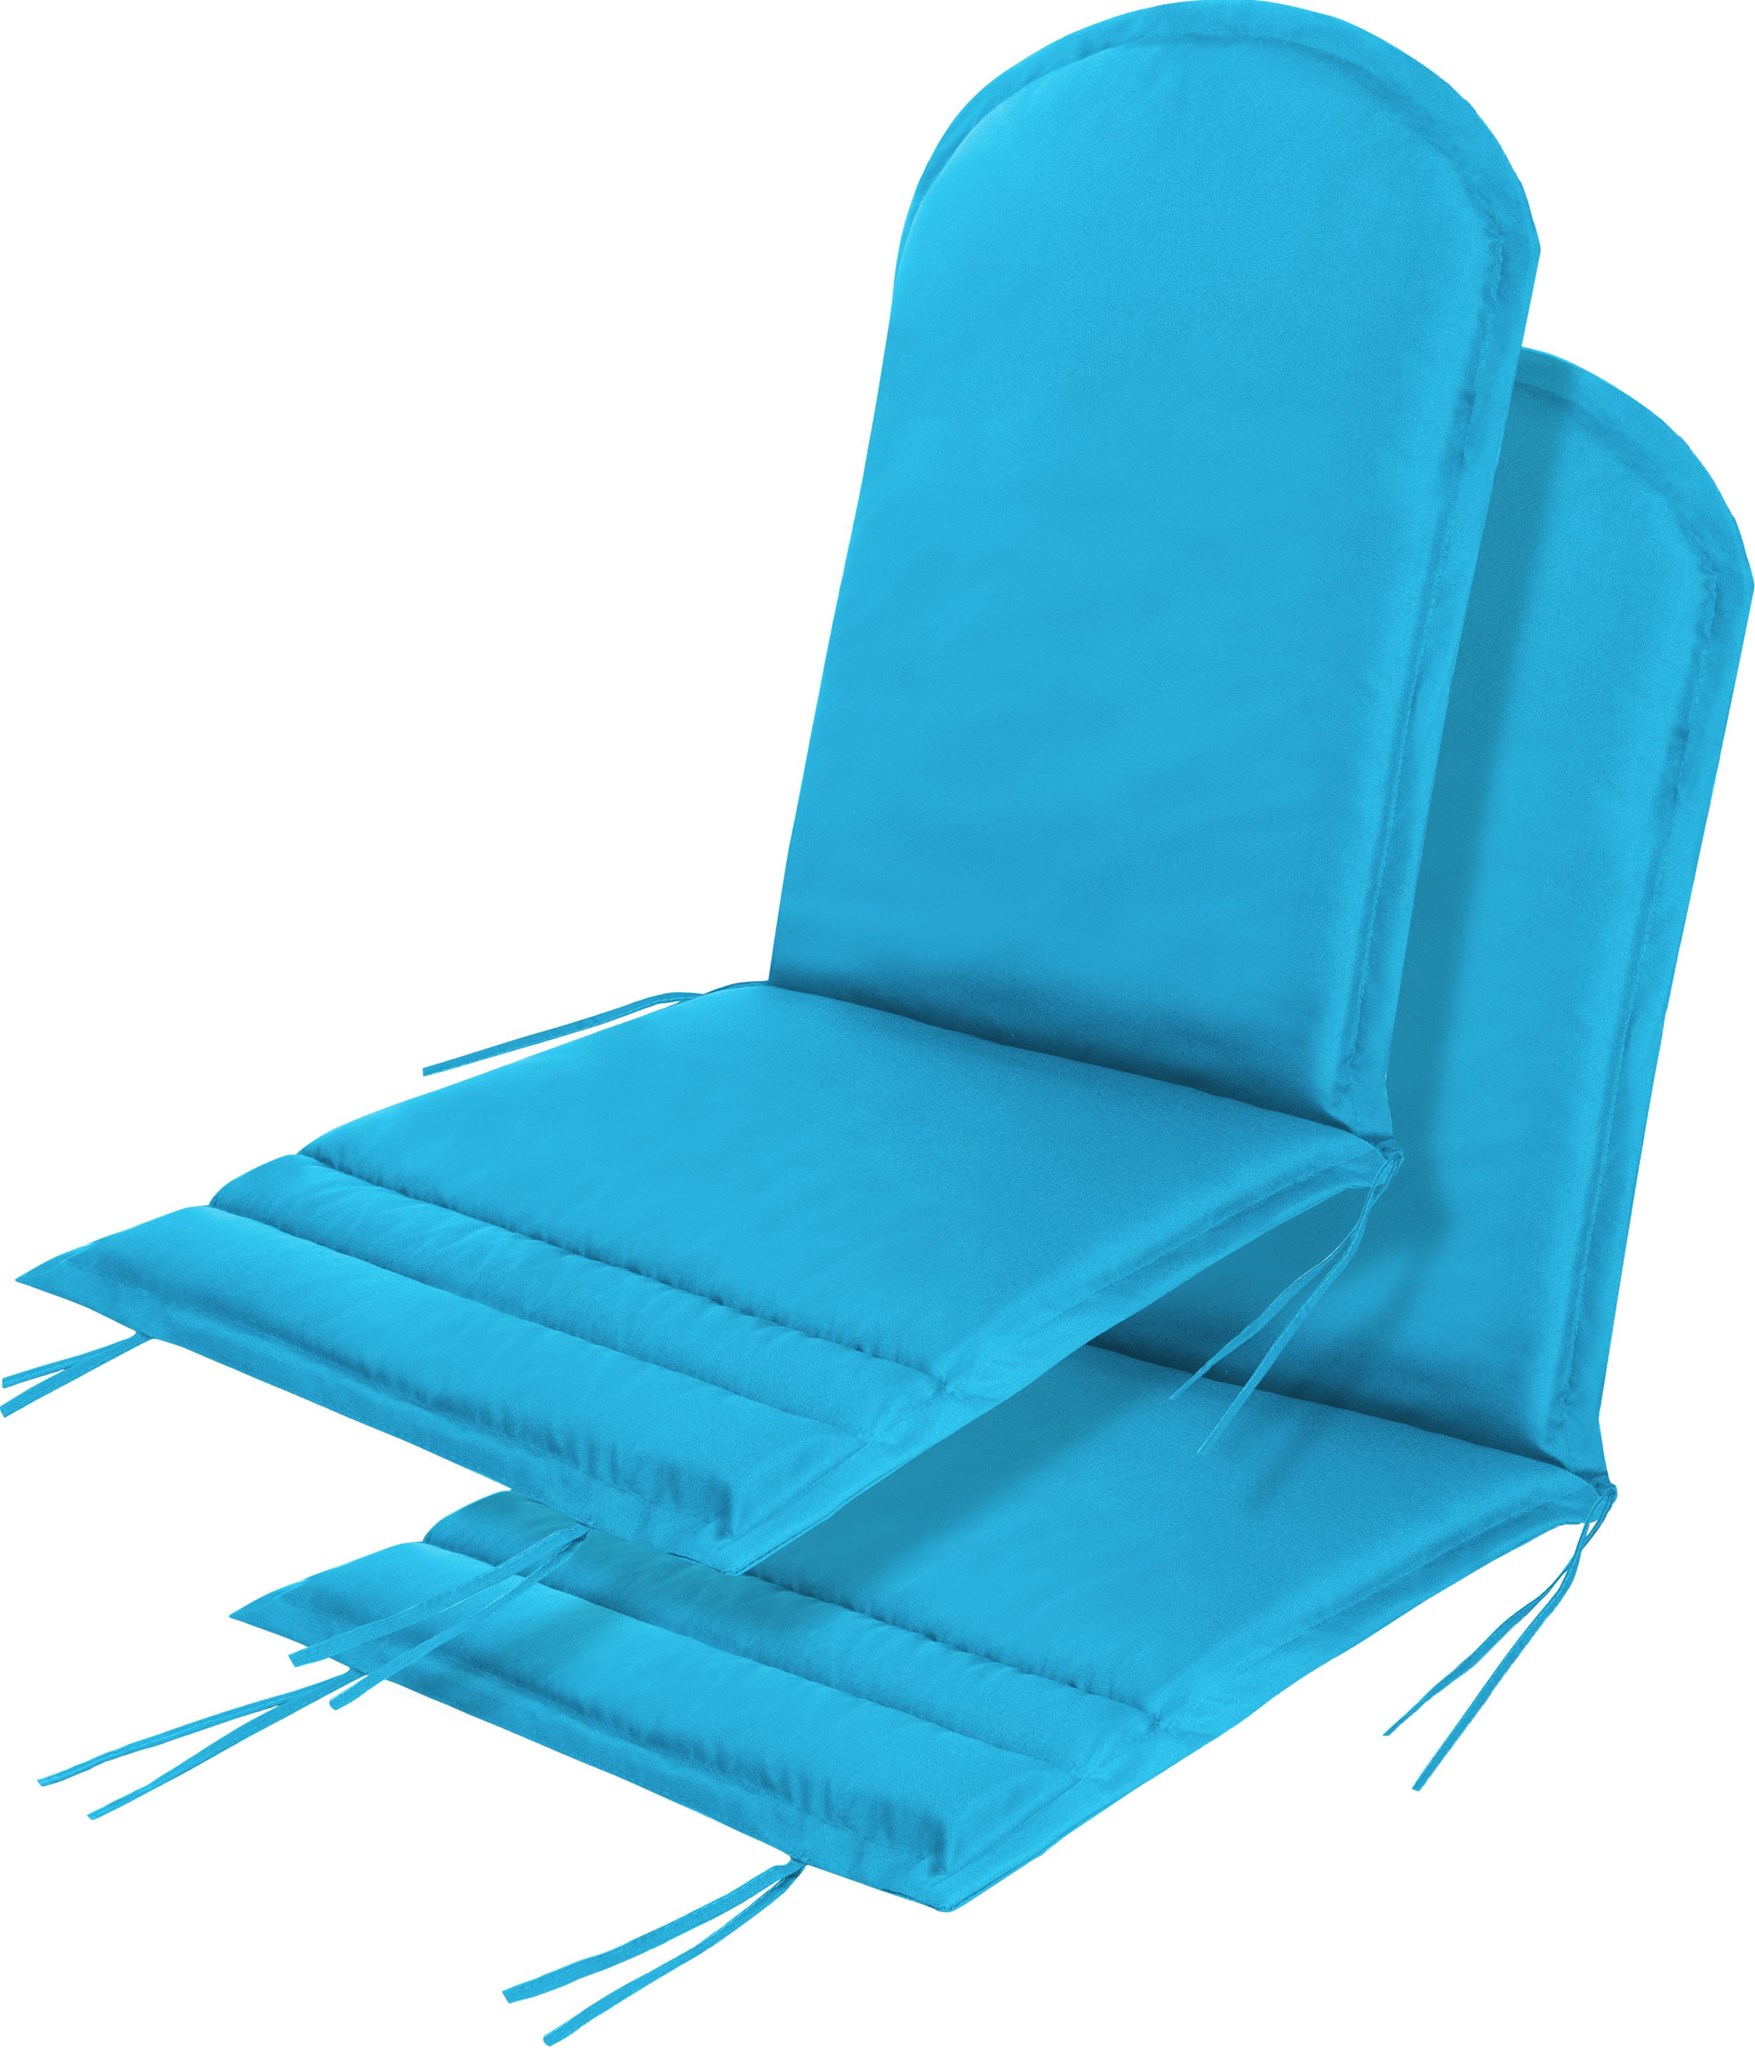 Bild von 2 x Stuhlauflage für Adirondack Gartenstuhl Türkis